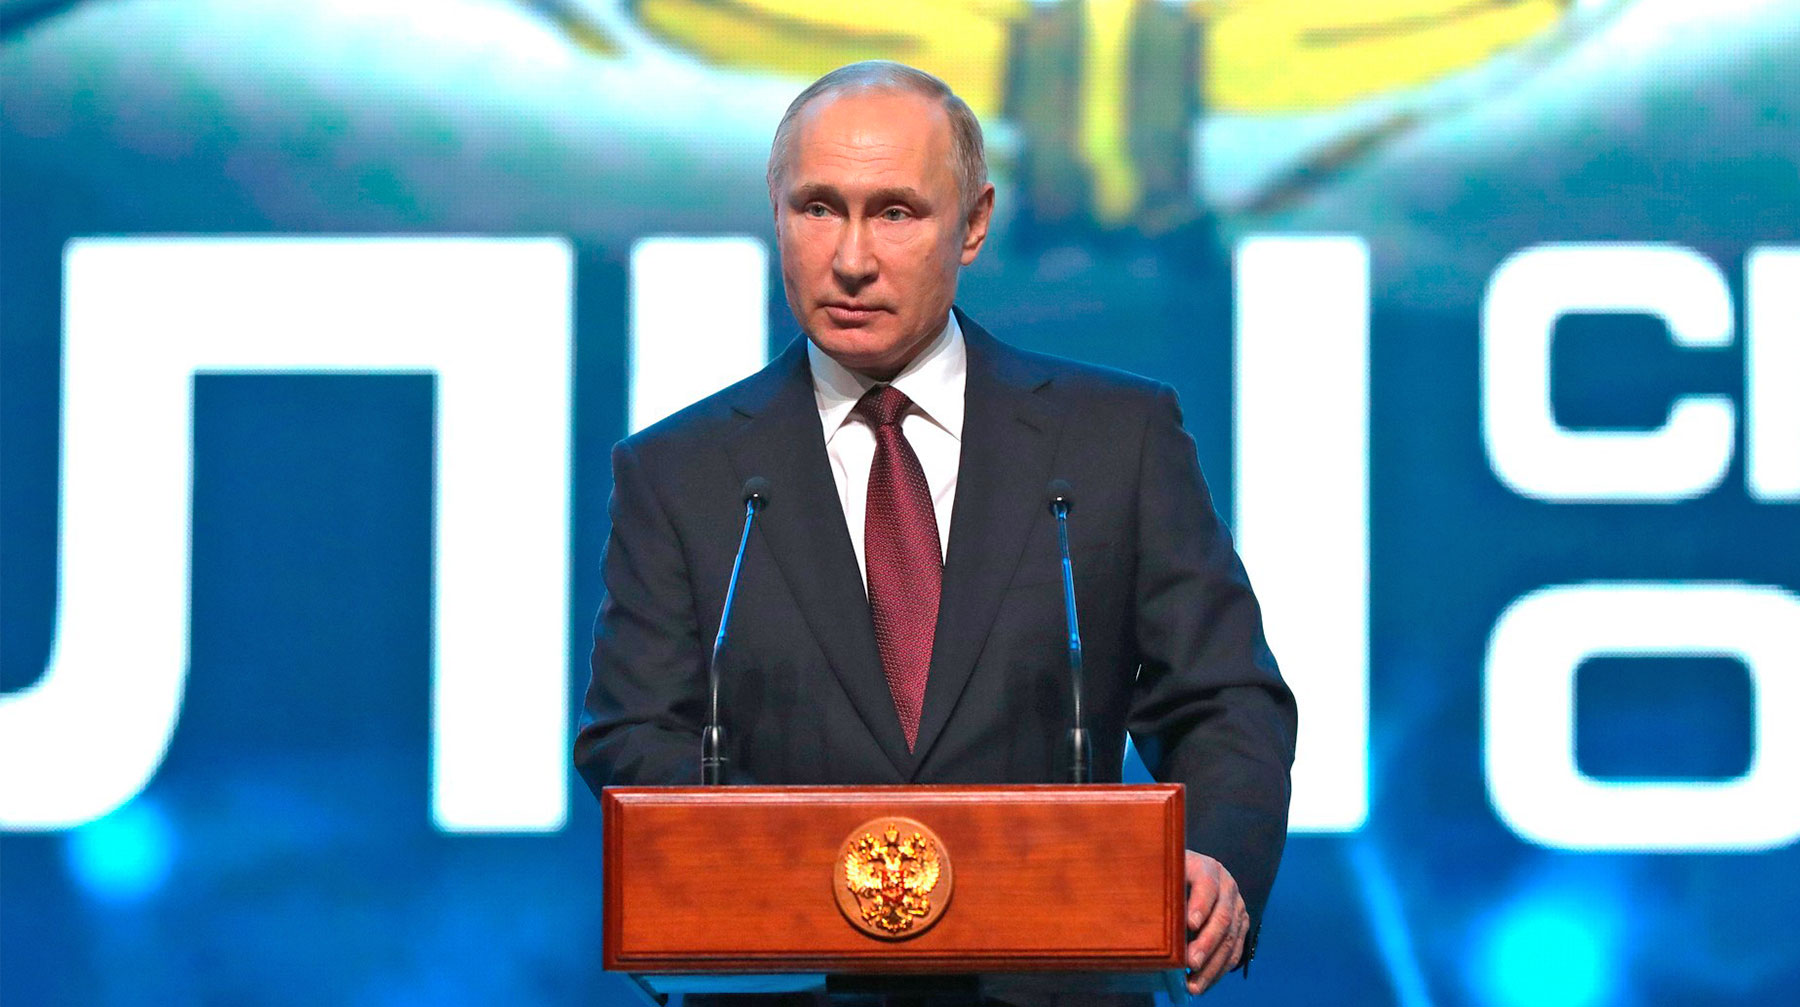 Современное боевое обучение опирается на опыт спецназа, сообщил президент Президент России Владимир Путин